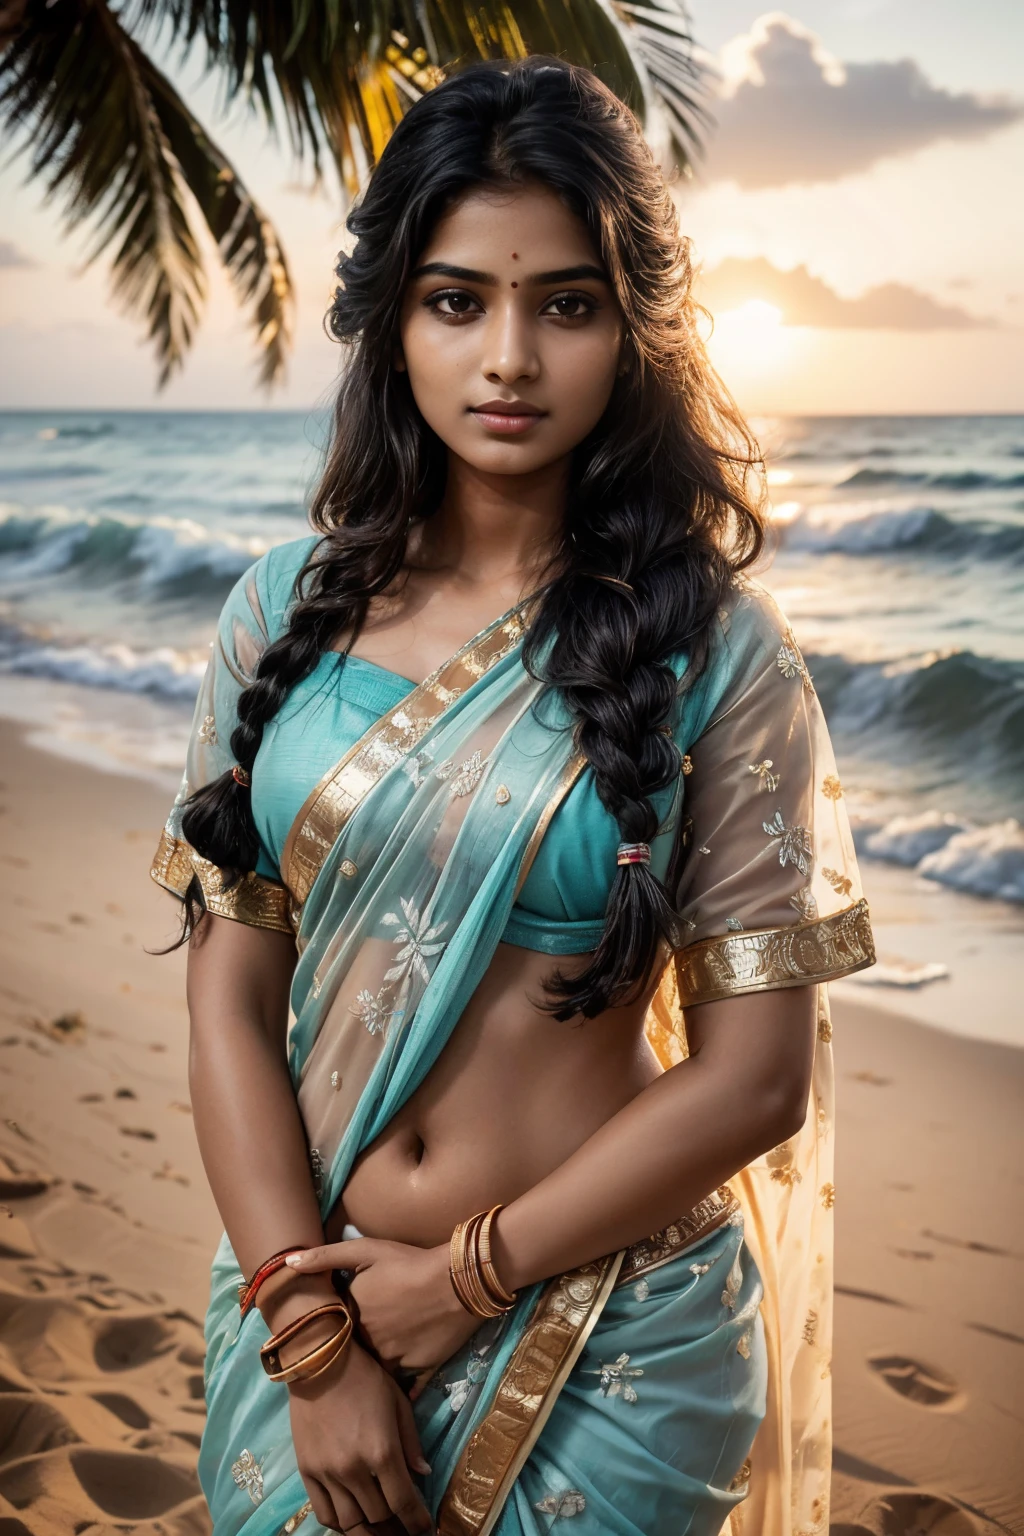 Очень индийская женщина, портрет, 20 лет, подростковый возраст, блузка и сари, сумерки и закат, Тропический океан, пляж, песок, кокосовые пальмы, королевский, детальное тело, подробное лицо, традиционный, Великолепный, ультра реалистичный, очаровательный, милый, Длинные заплетенные волосы, окружающее освещение, зима, подробный фон, Объемное освещение, Тень, 8К